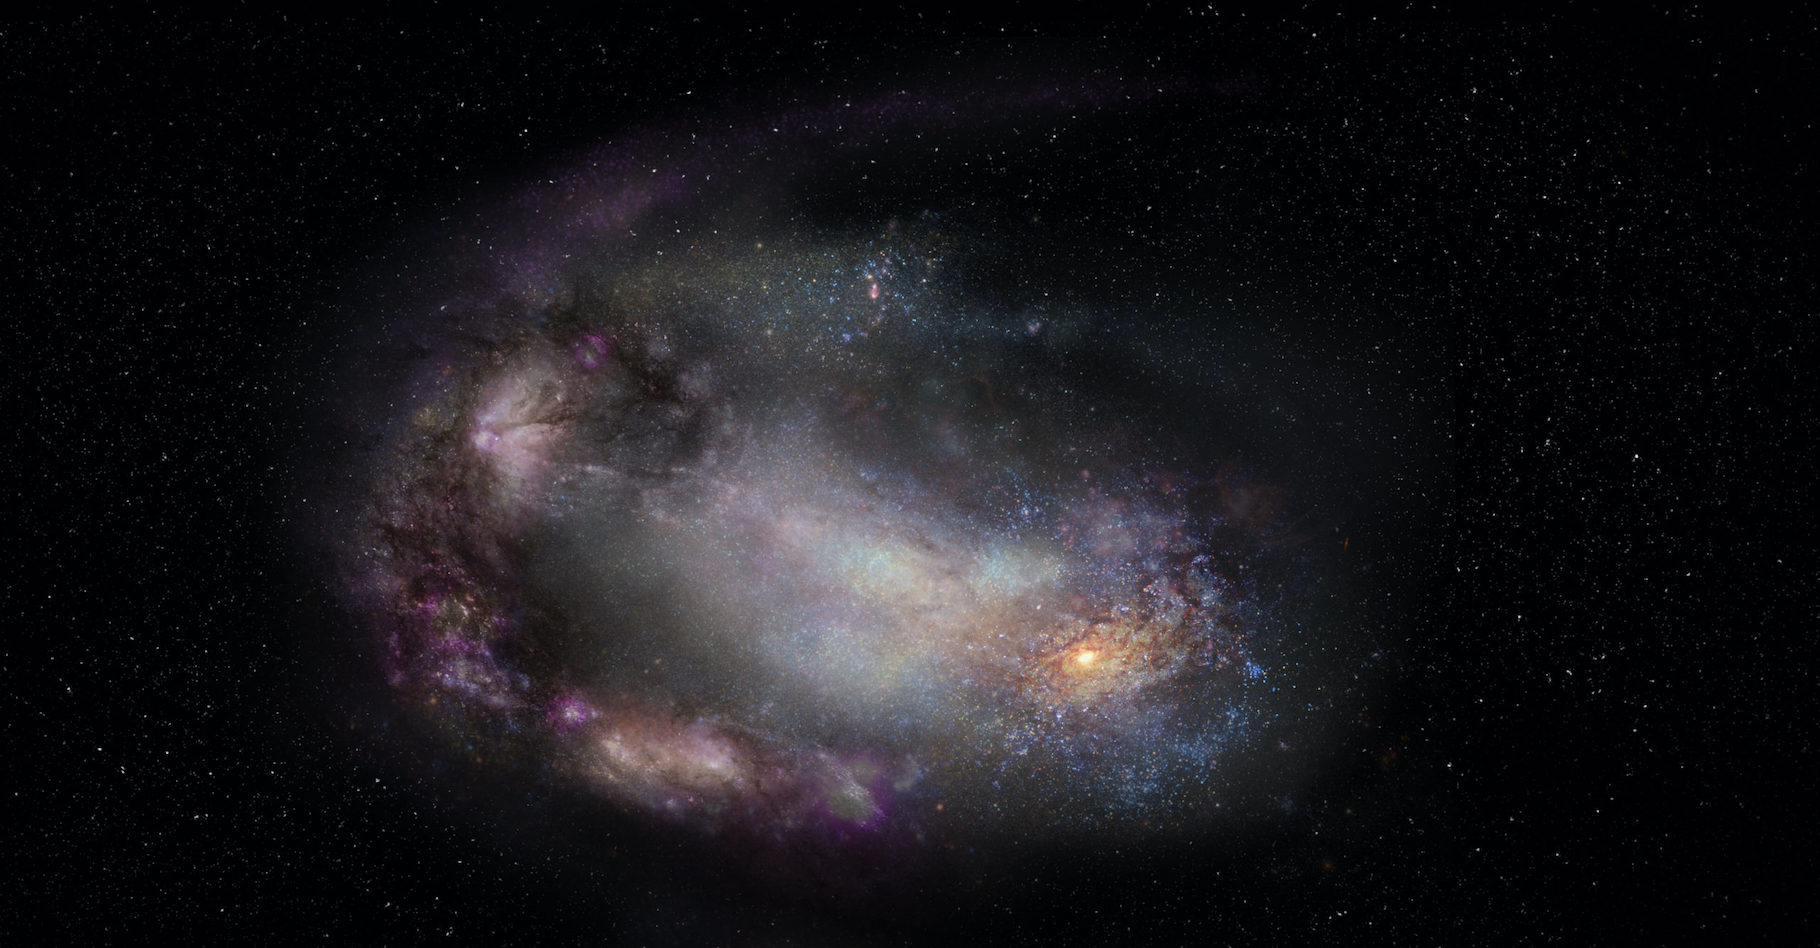 Une vue d’artiste d’une galaxie naine, probablement déformée par une interaction passée avec une autre galaxie, et un trou noir massif à sa périphérie (en bas à droite). © Sophia Dagnello, NRAO, AUI, NSF